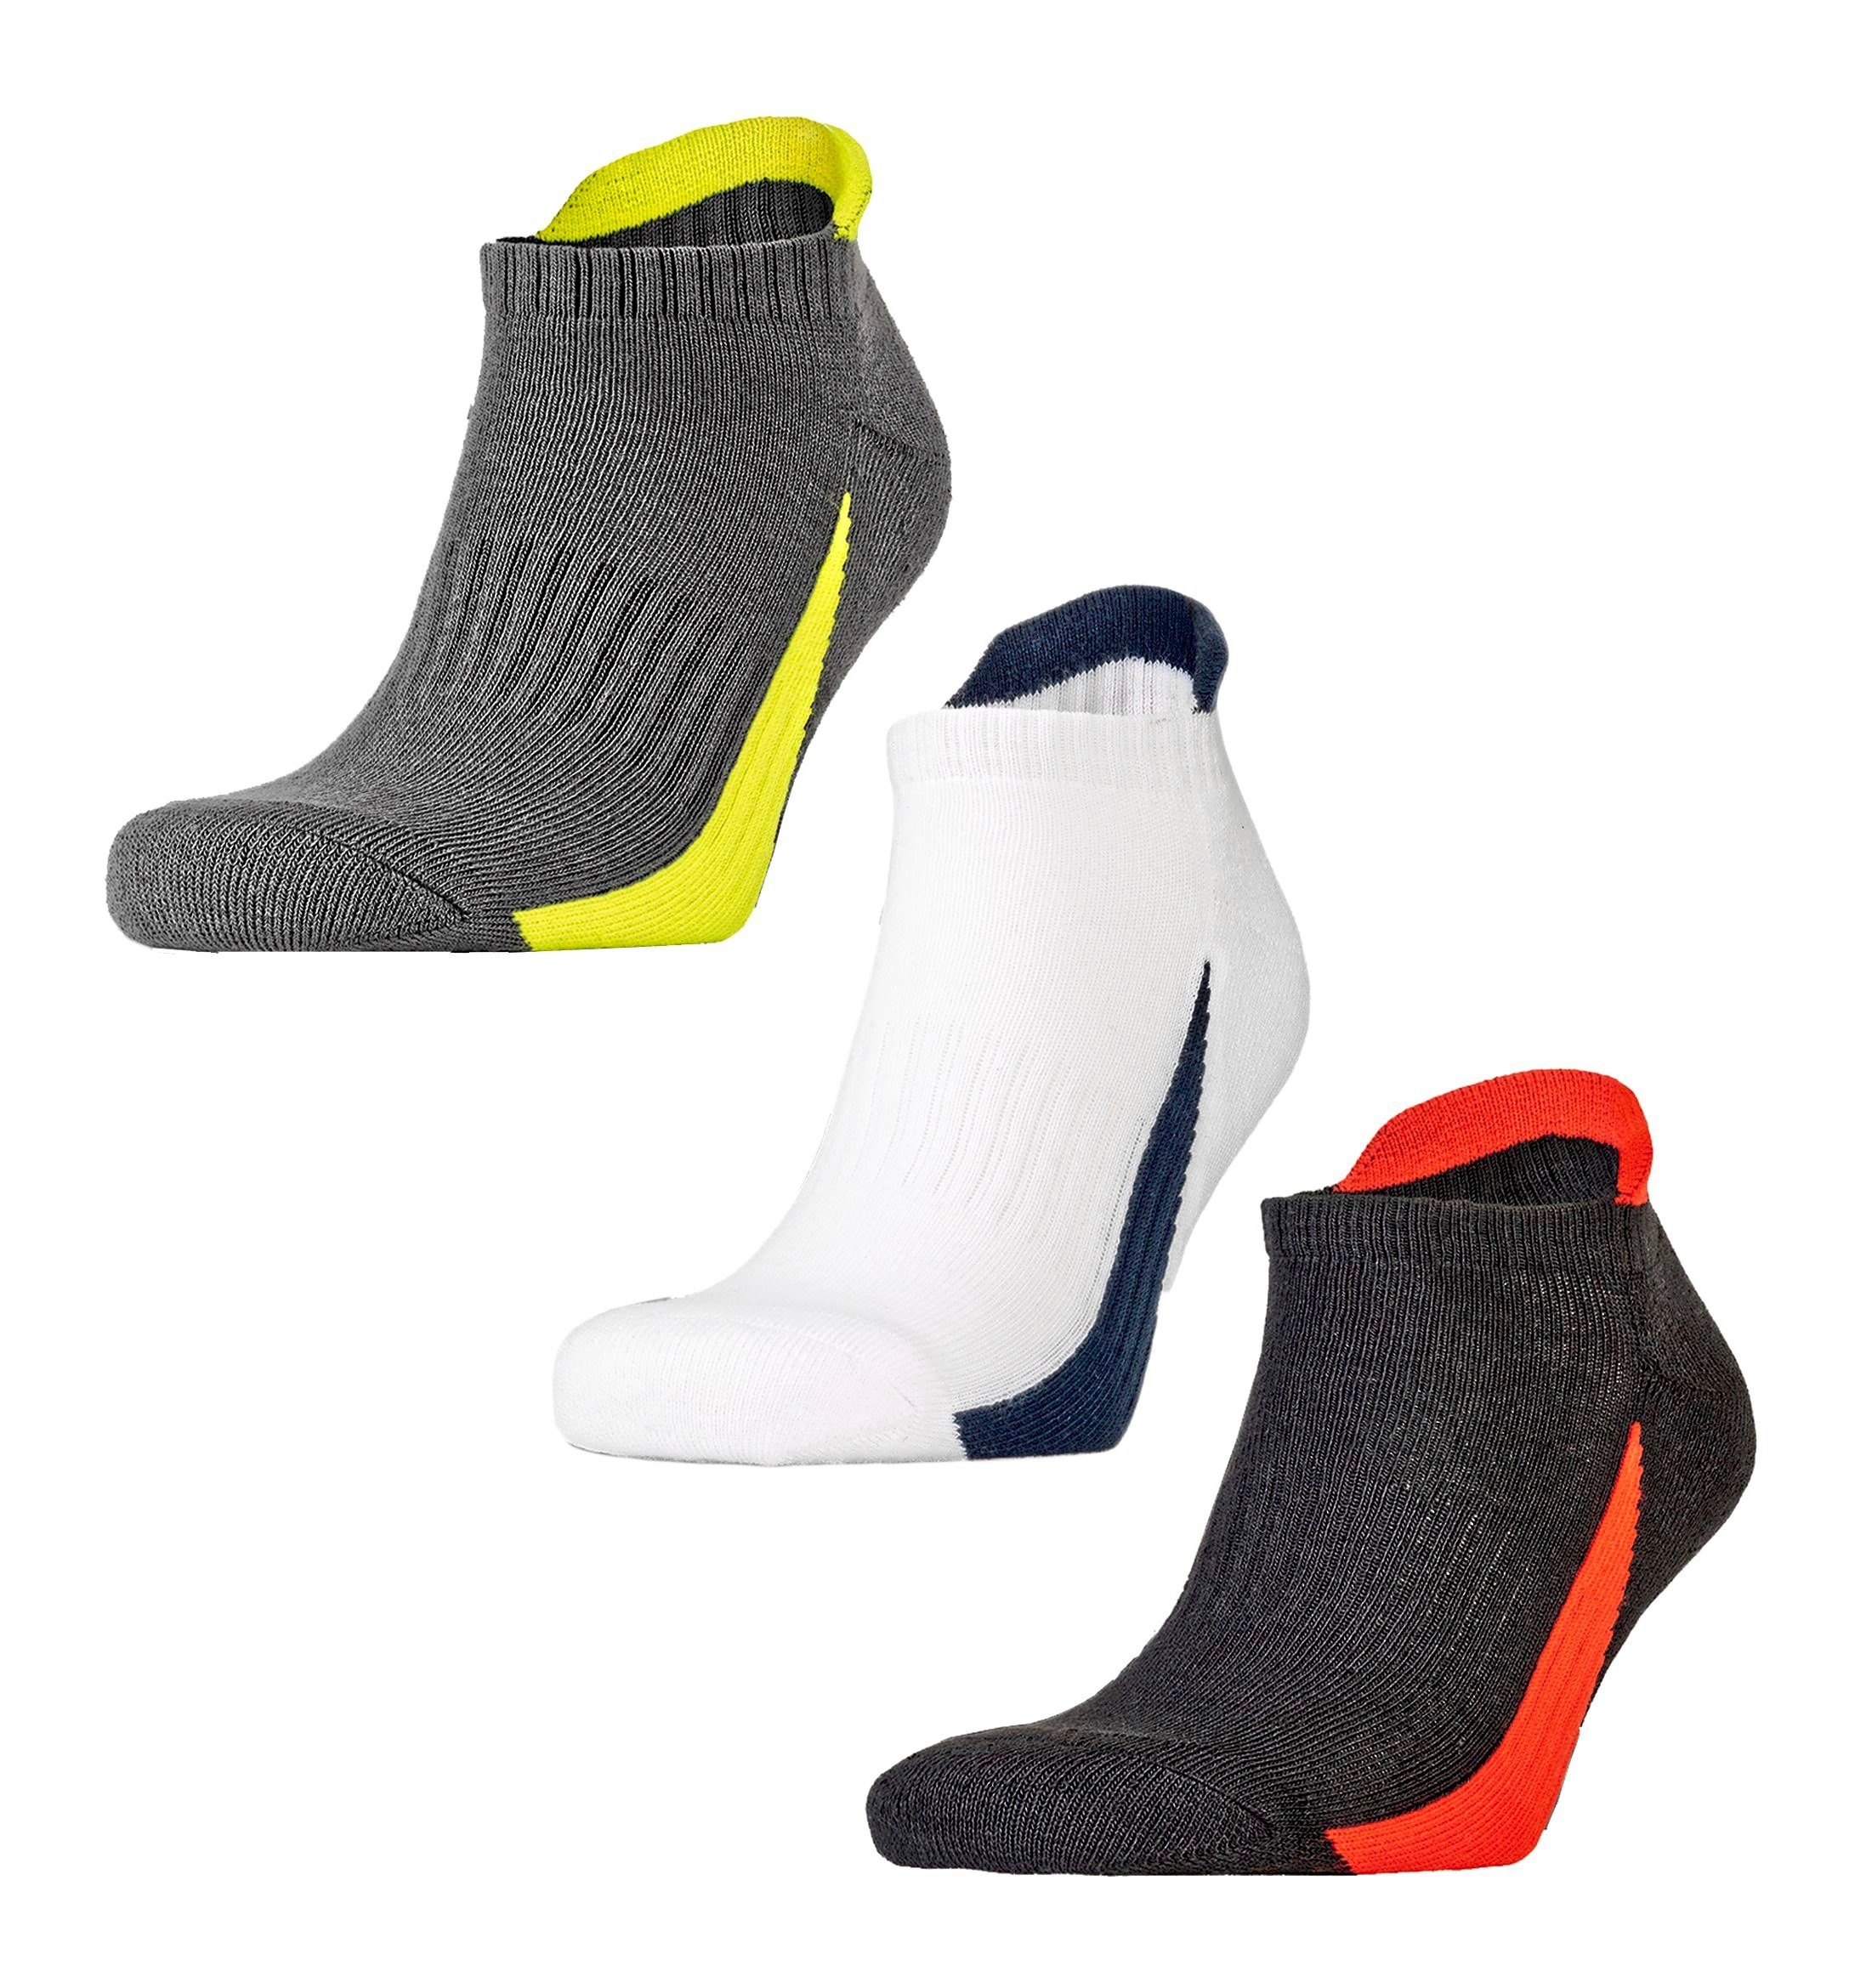 SPIRO Sportsocken Unisex Sport Socken / Sportsocken für Frauen u. Männer - 3er-Pack Gepolsterte Sohle